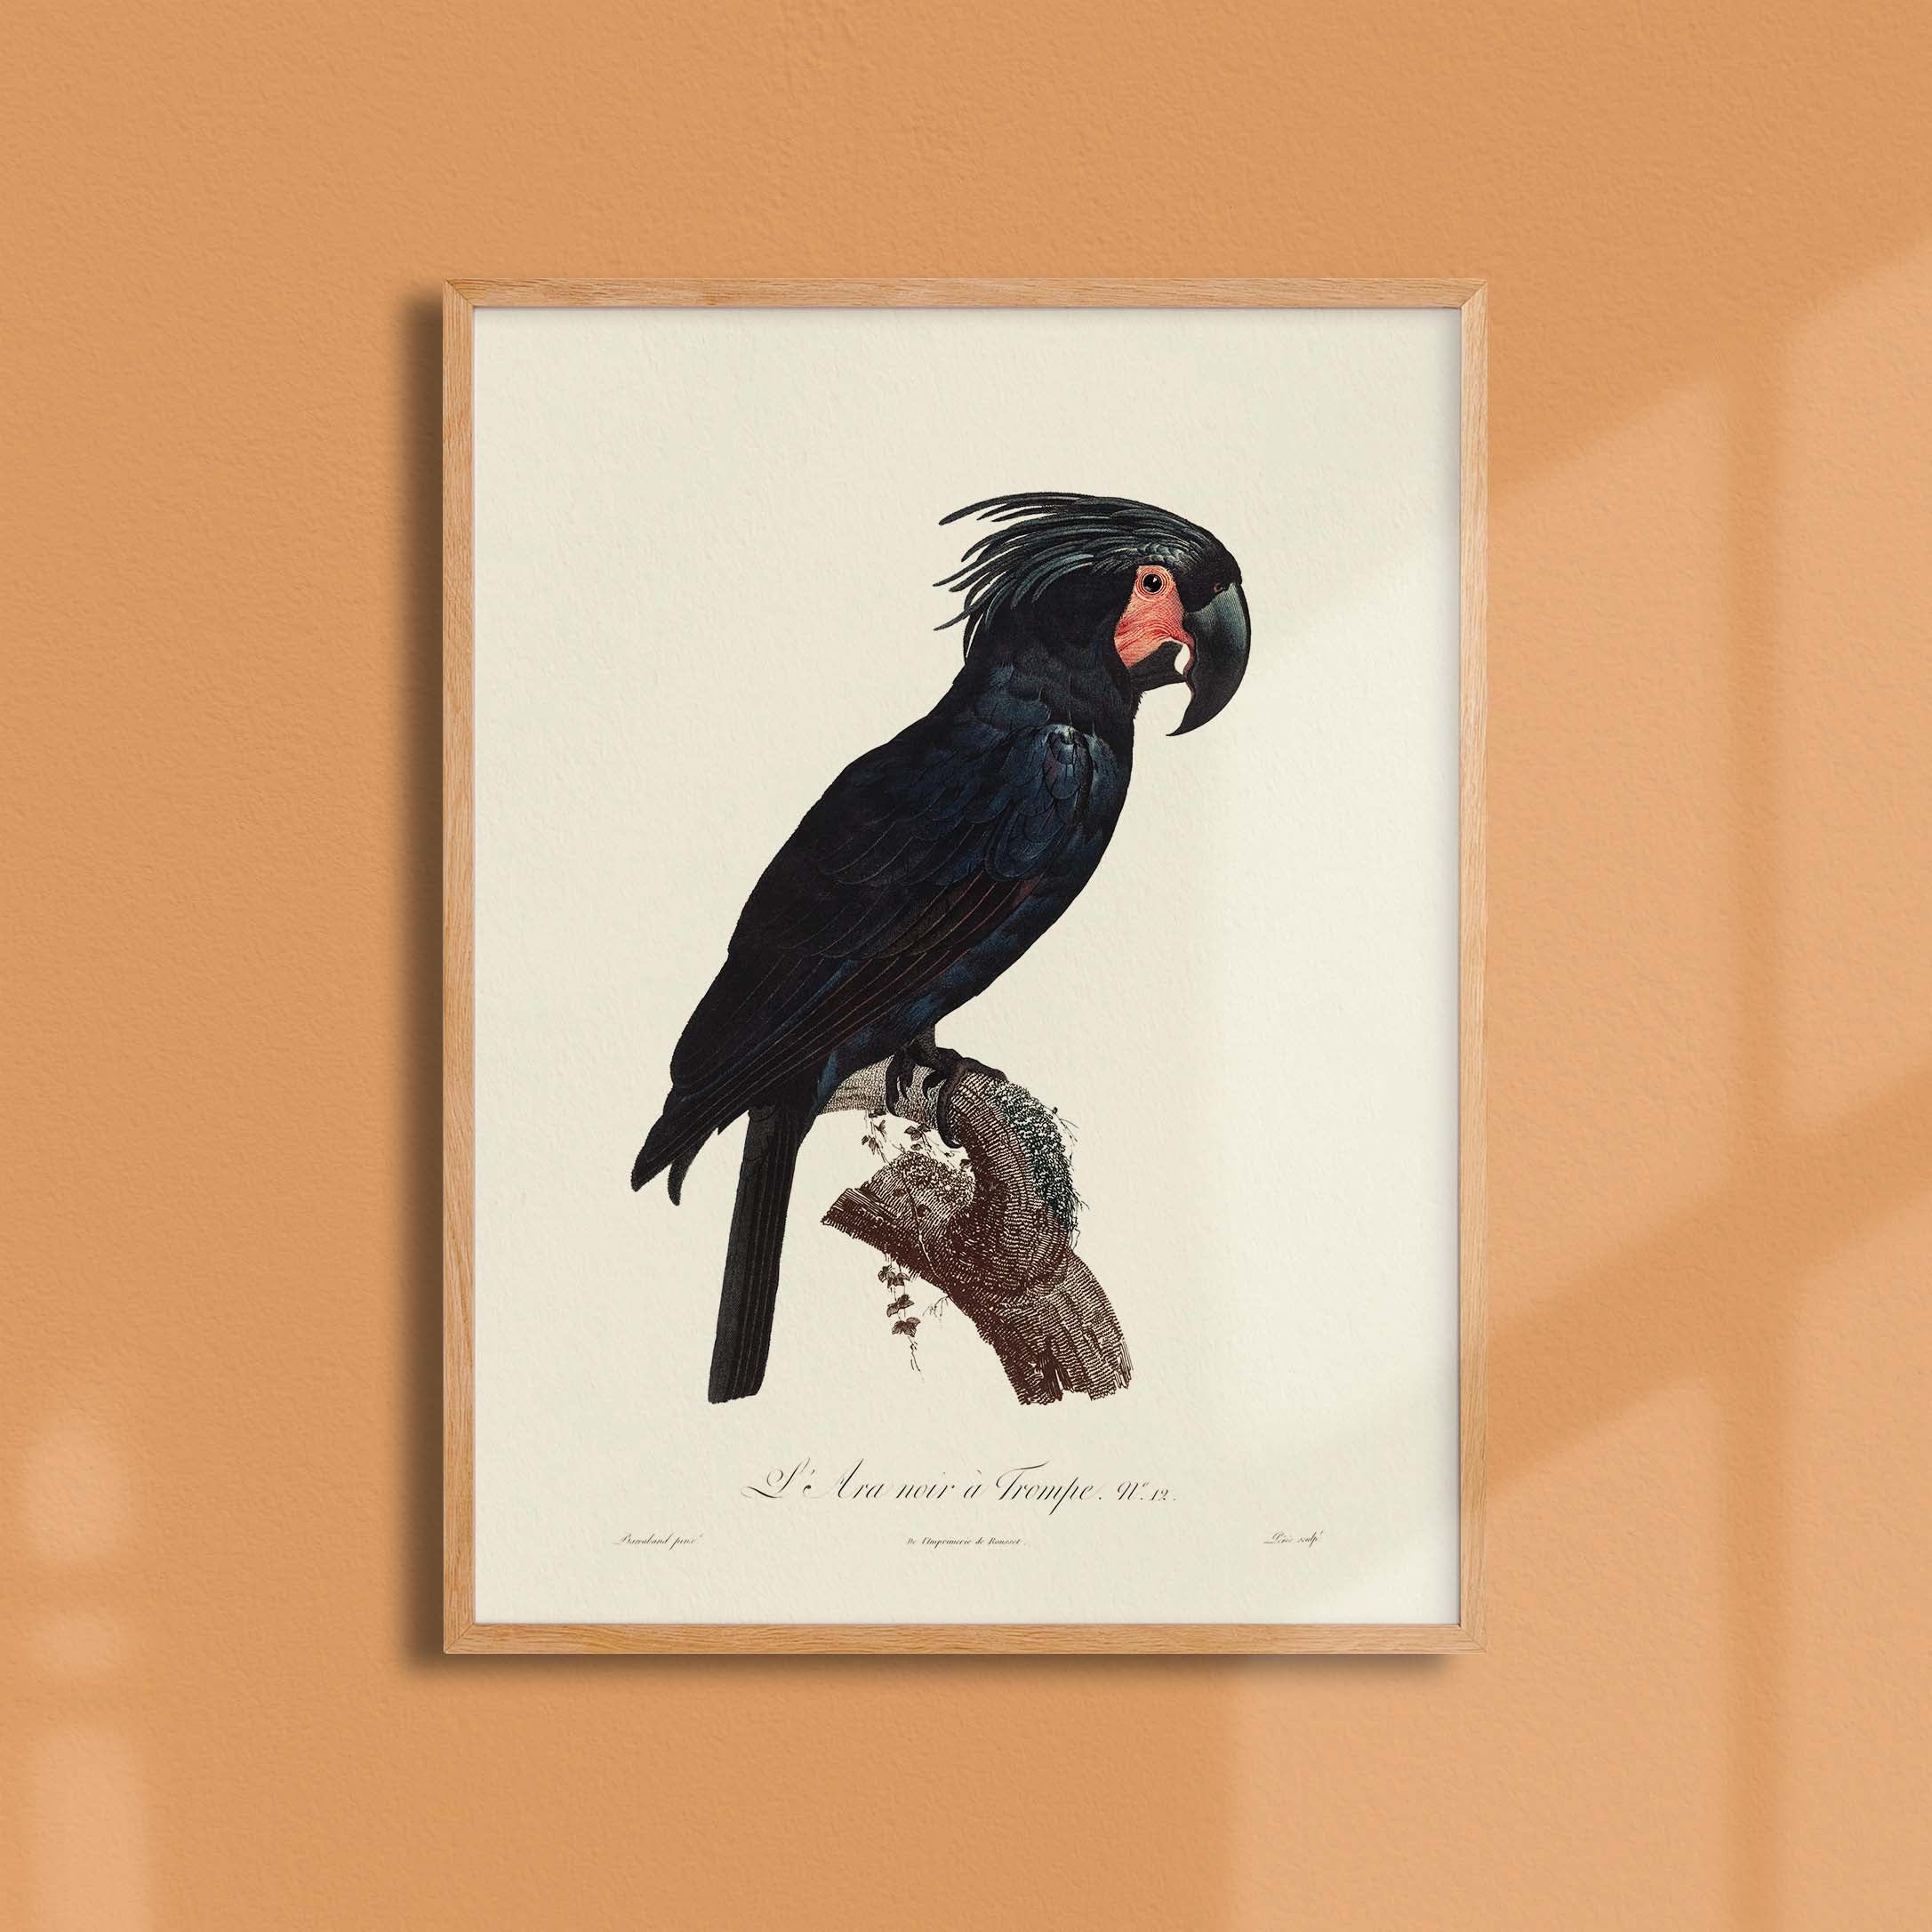 Planche d'ornithologie - L'Ara noir à trompe-oneart.fr